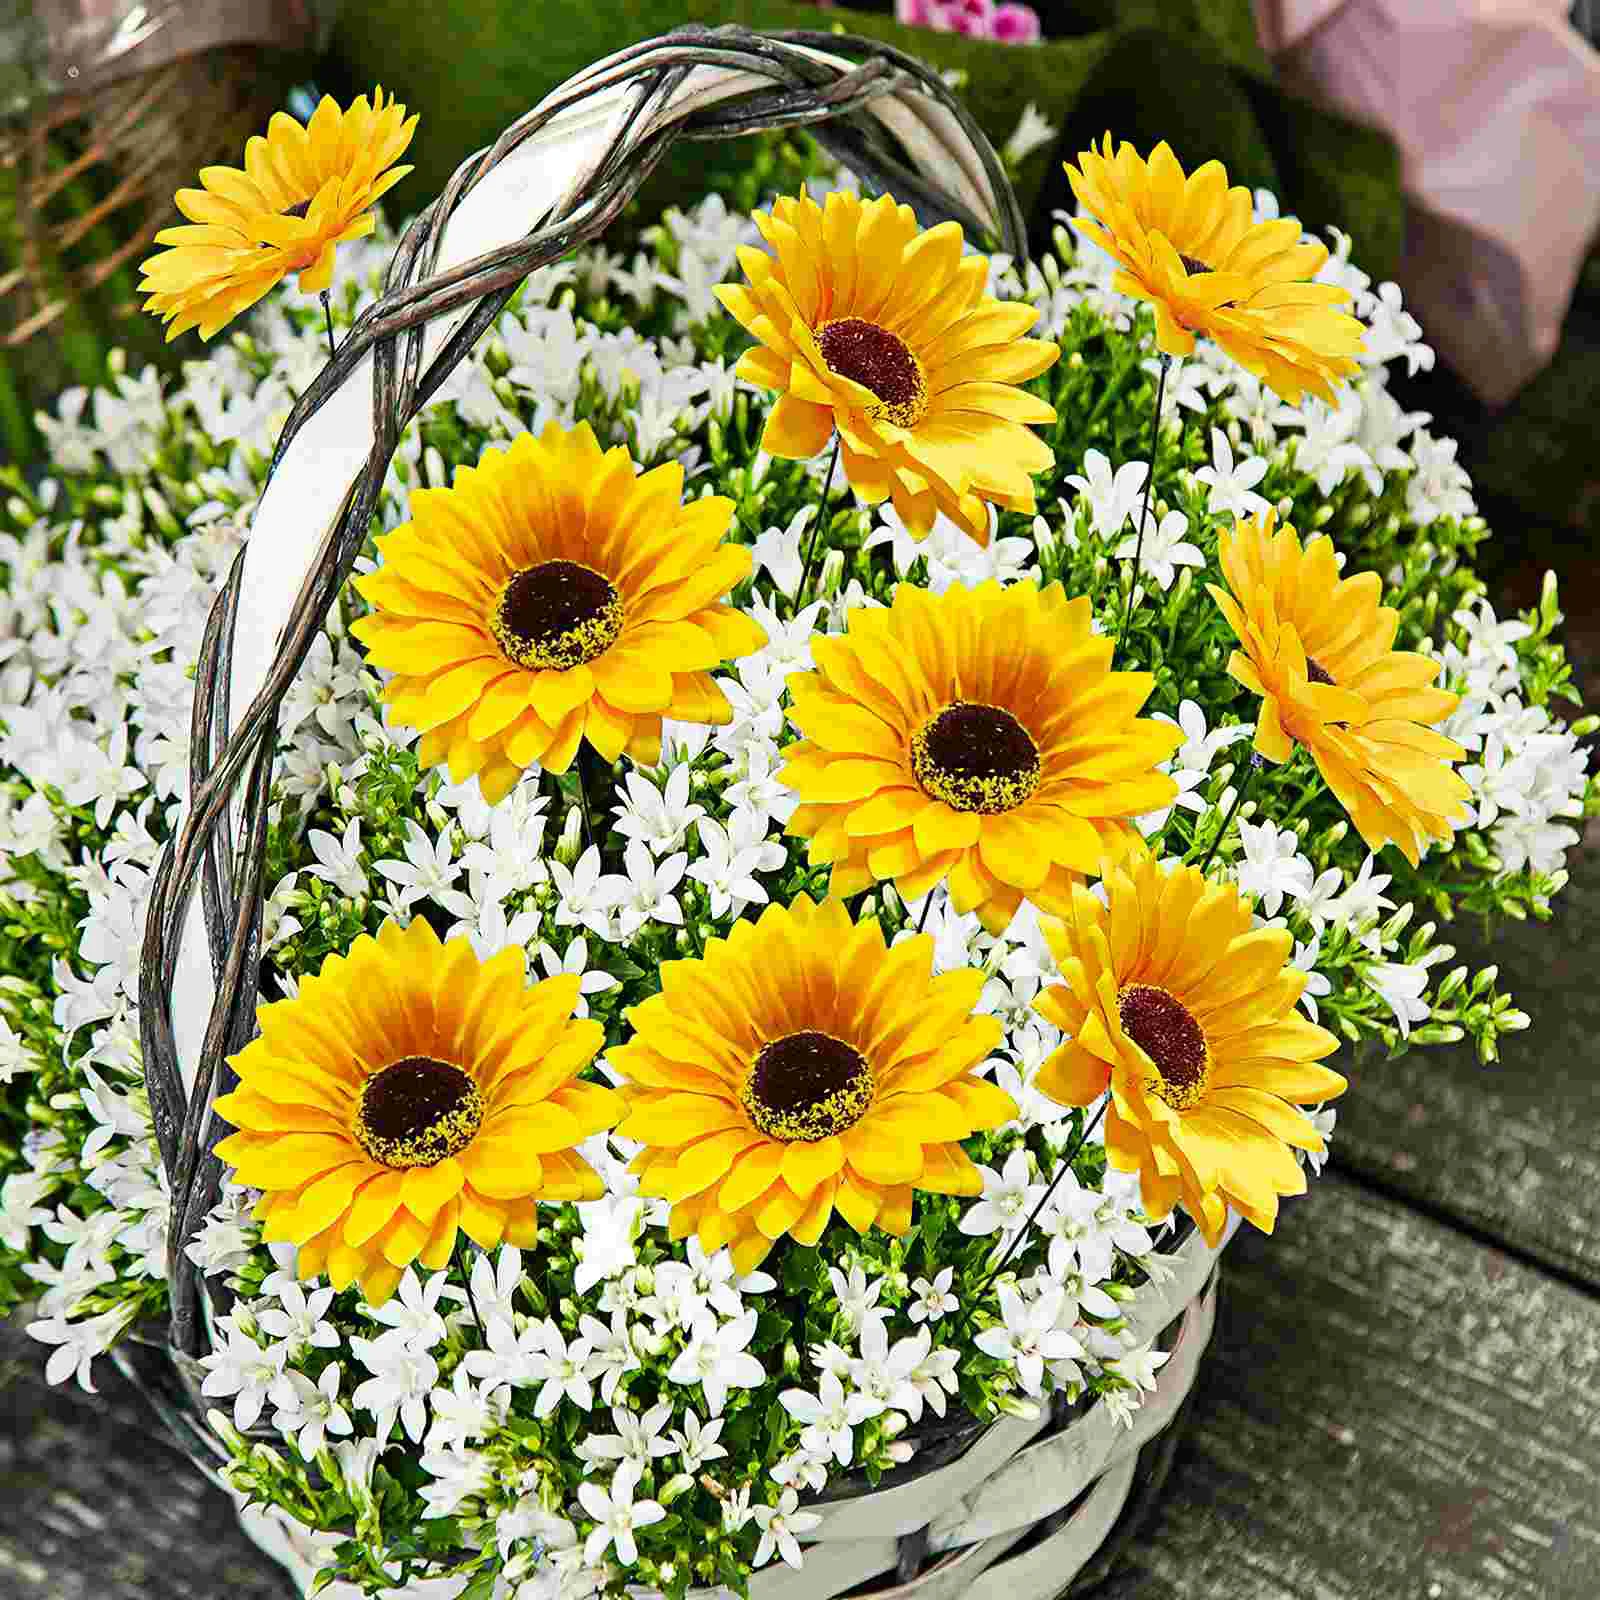 Kert napraforgó cövek sárga virágcserép pick gyep selyem virág cövek dekoráció váza töltőanyag ültető betét udvari dekoráció